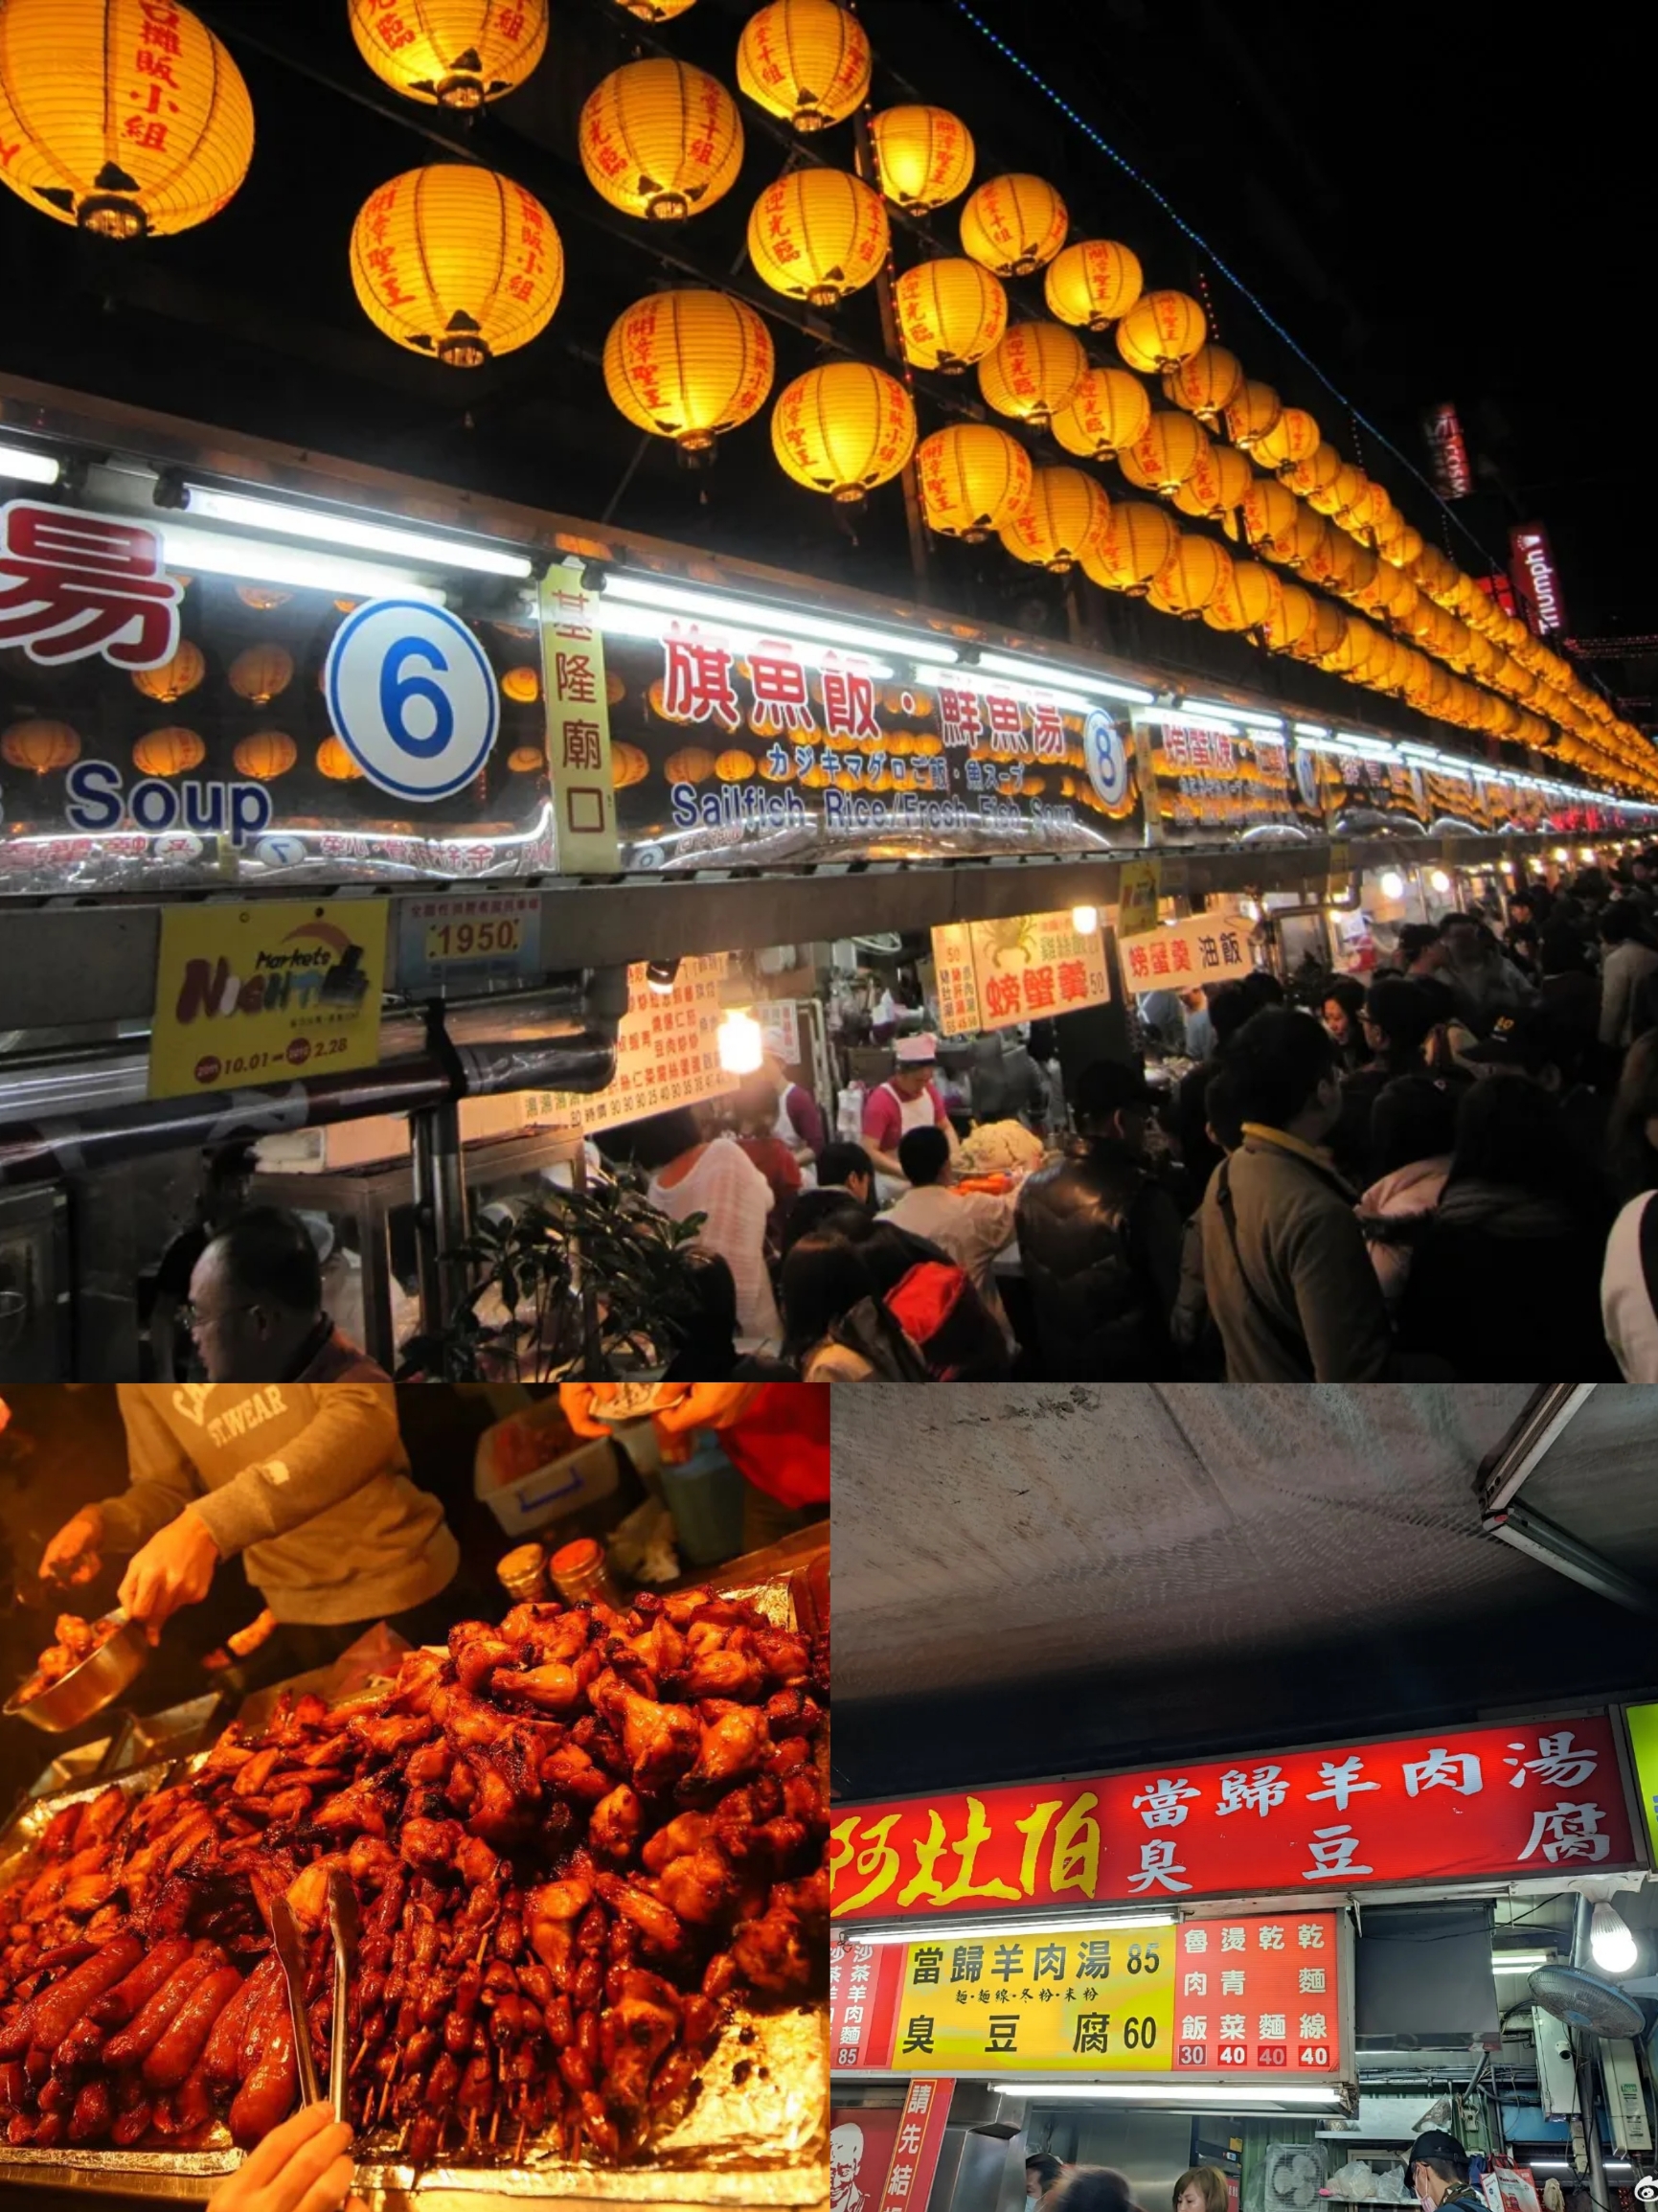 罗东夜市位于宜兰县罗东镇，是当地逛街购物的中心，是罗东最富盛名的小吃街，几乎全部集中在台湾汽车客运车